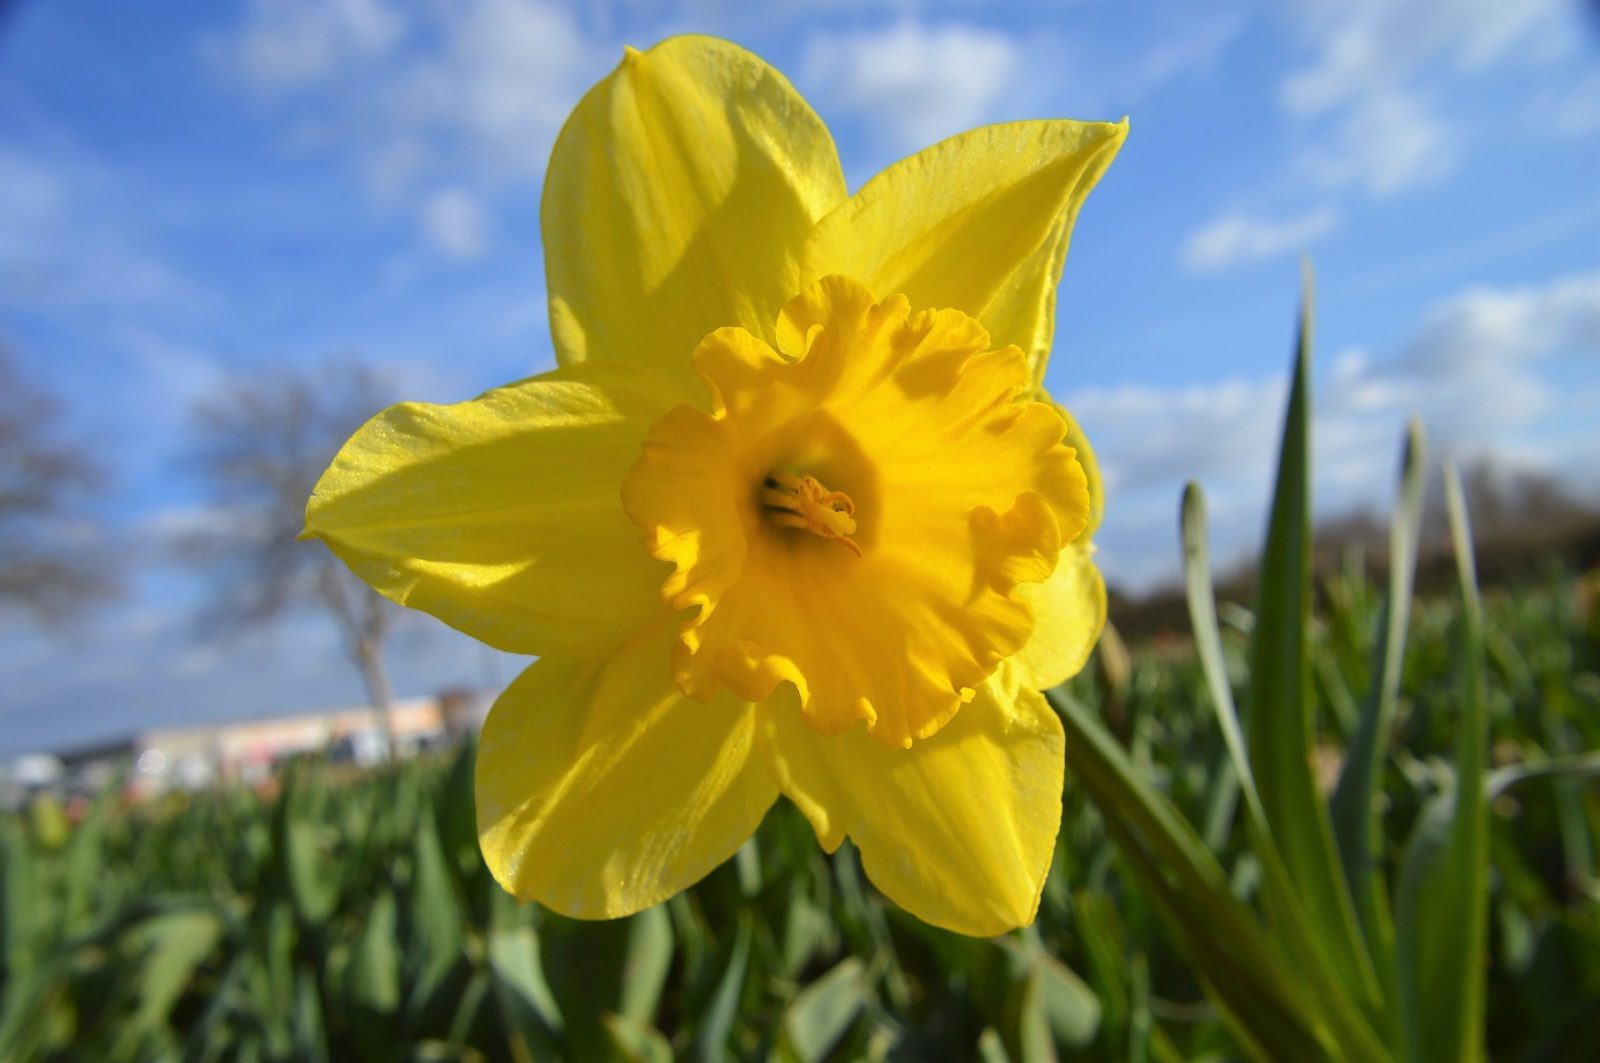 Daffodil Campaign raises $35,000 locally